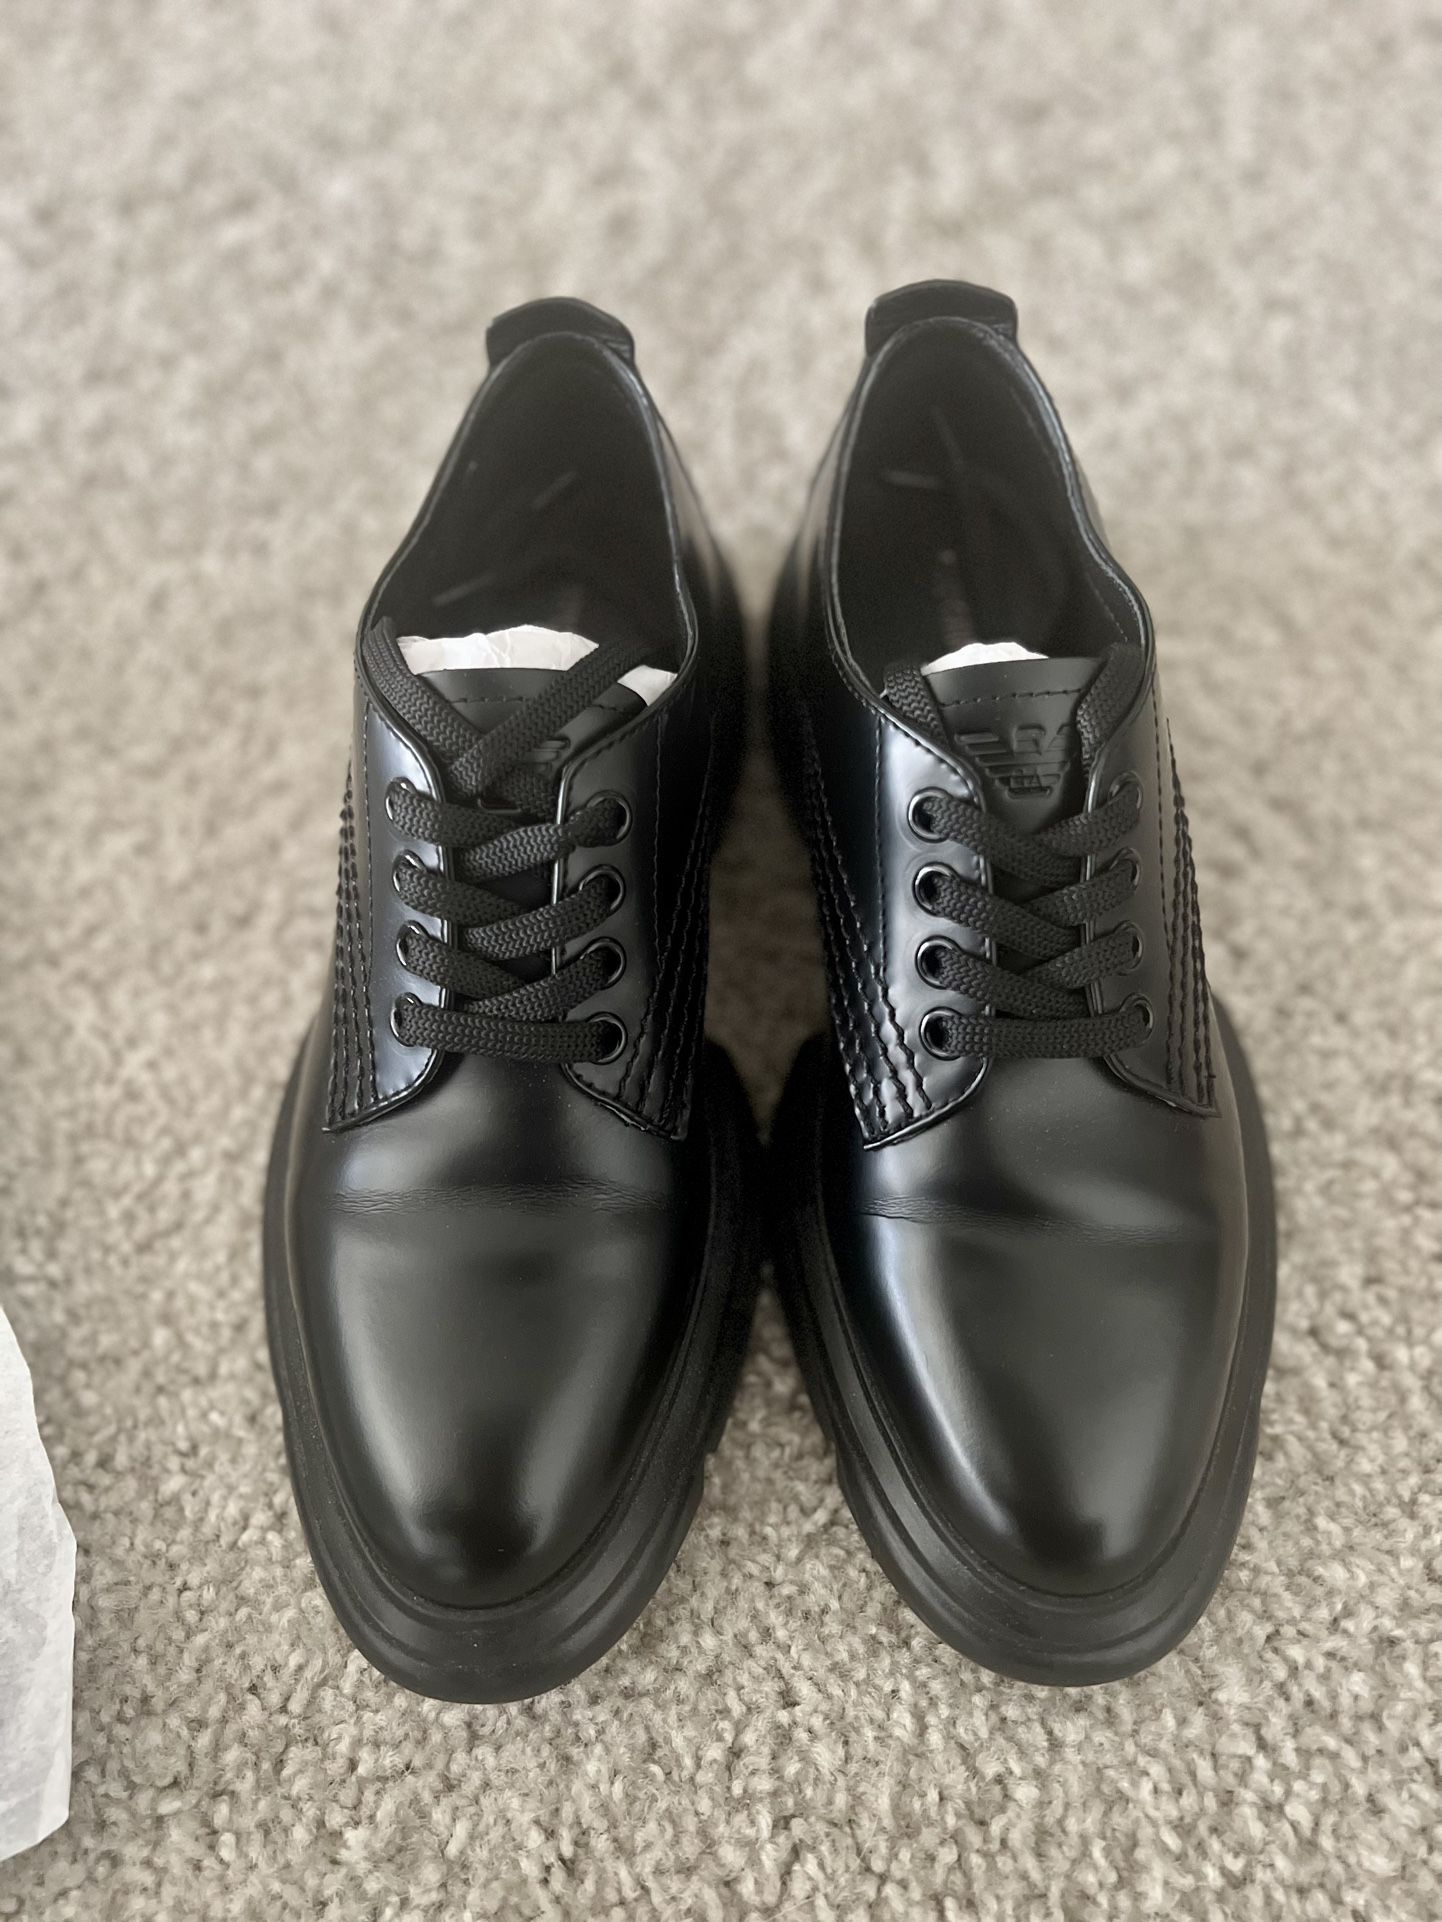 Emporio Armani Women’s Black Fringe Leather Shoe Size 6M 